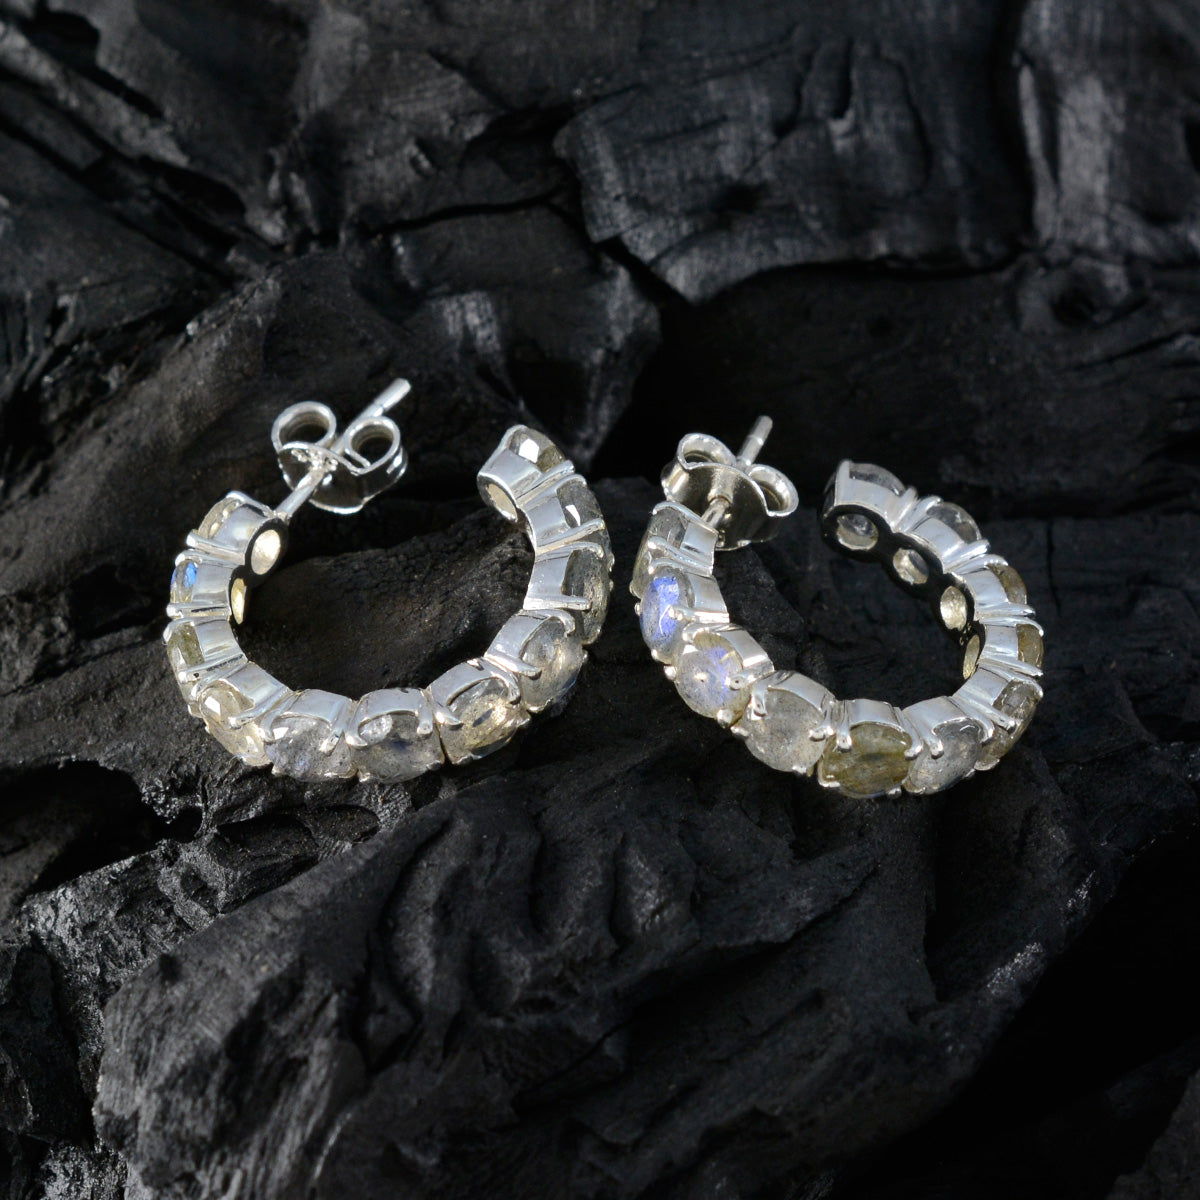 Riyo Comely Sterling Silver Earring For Demoiselle Labradorite Earring Bezel Setting Multi Earring Stud Earring